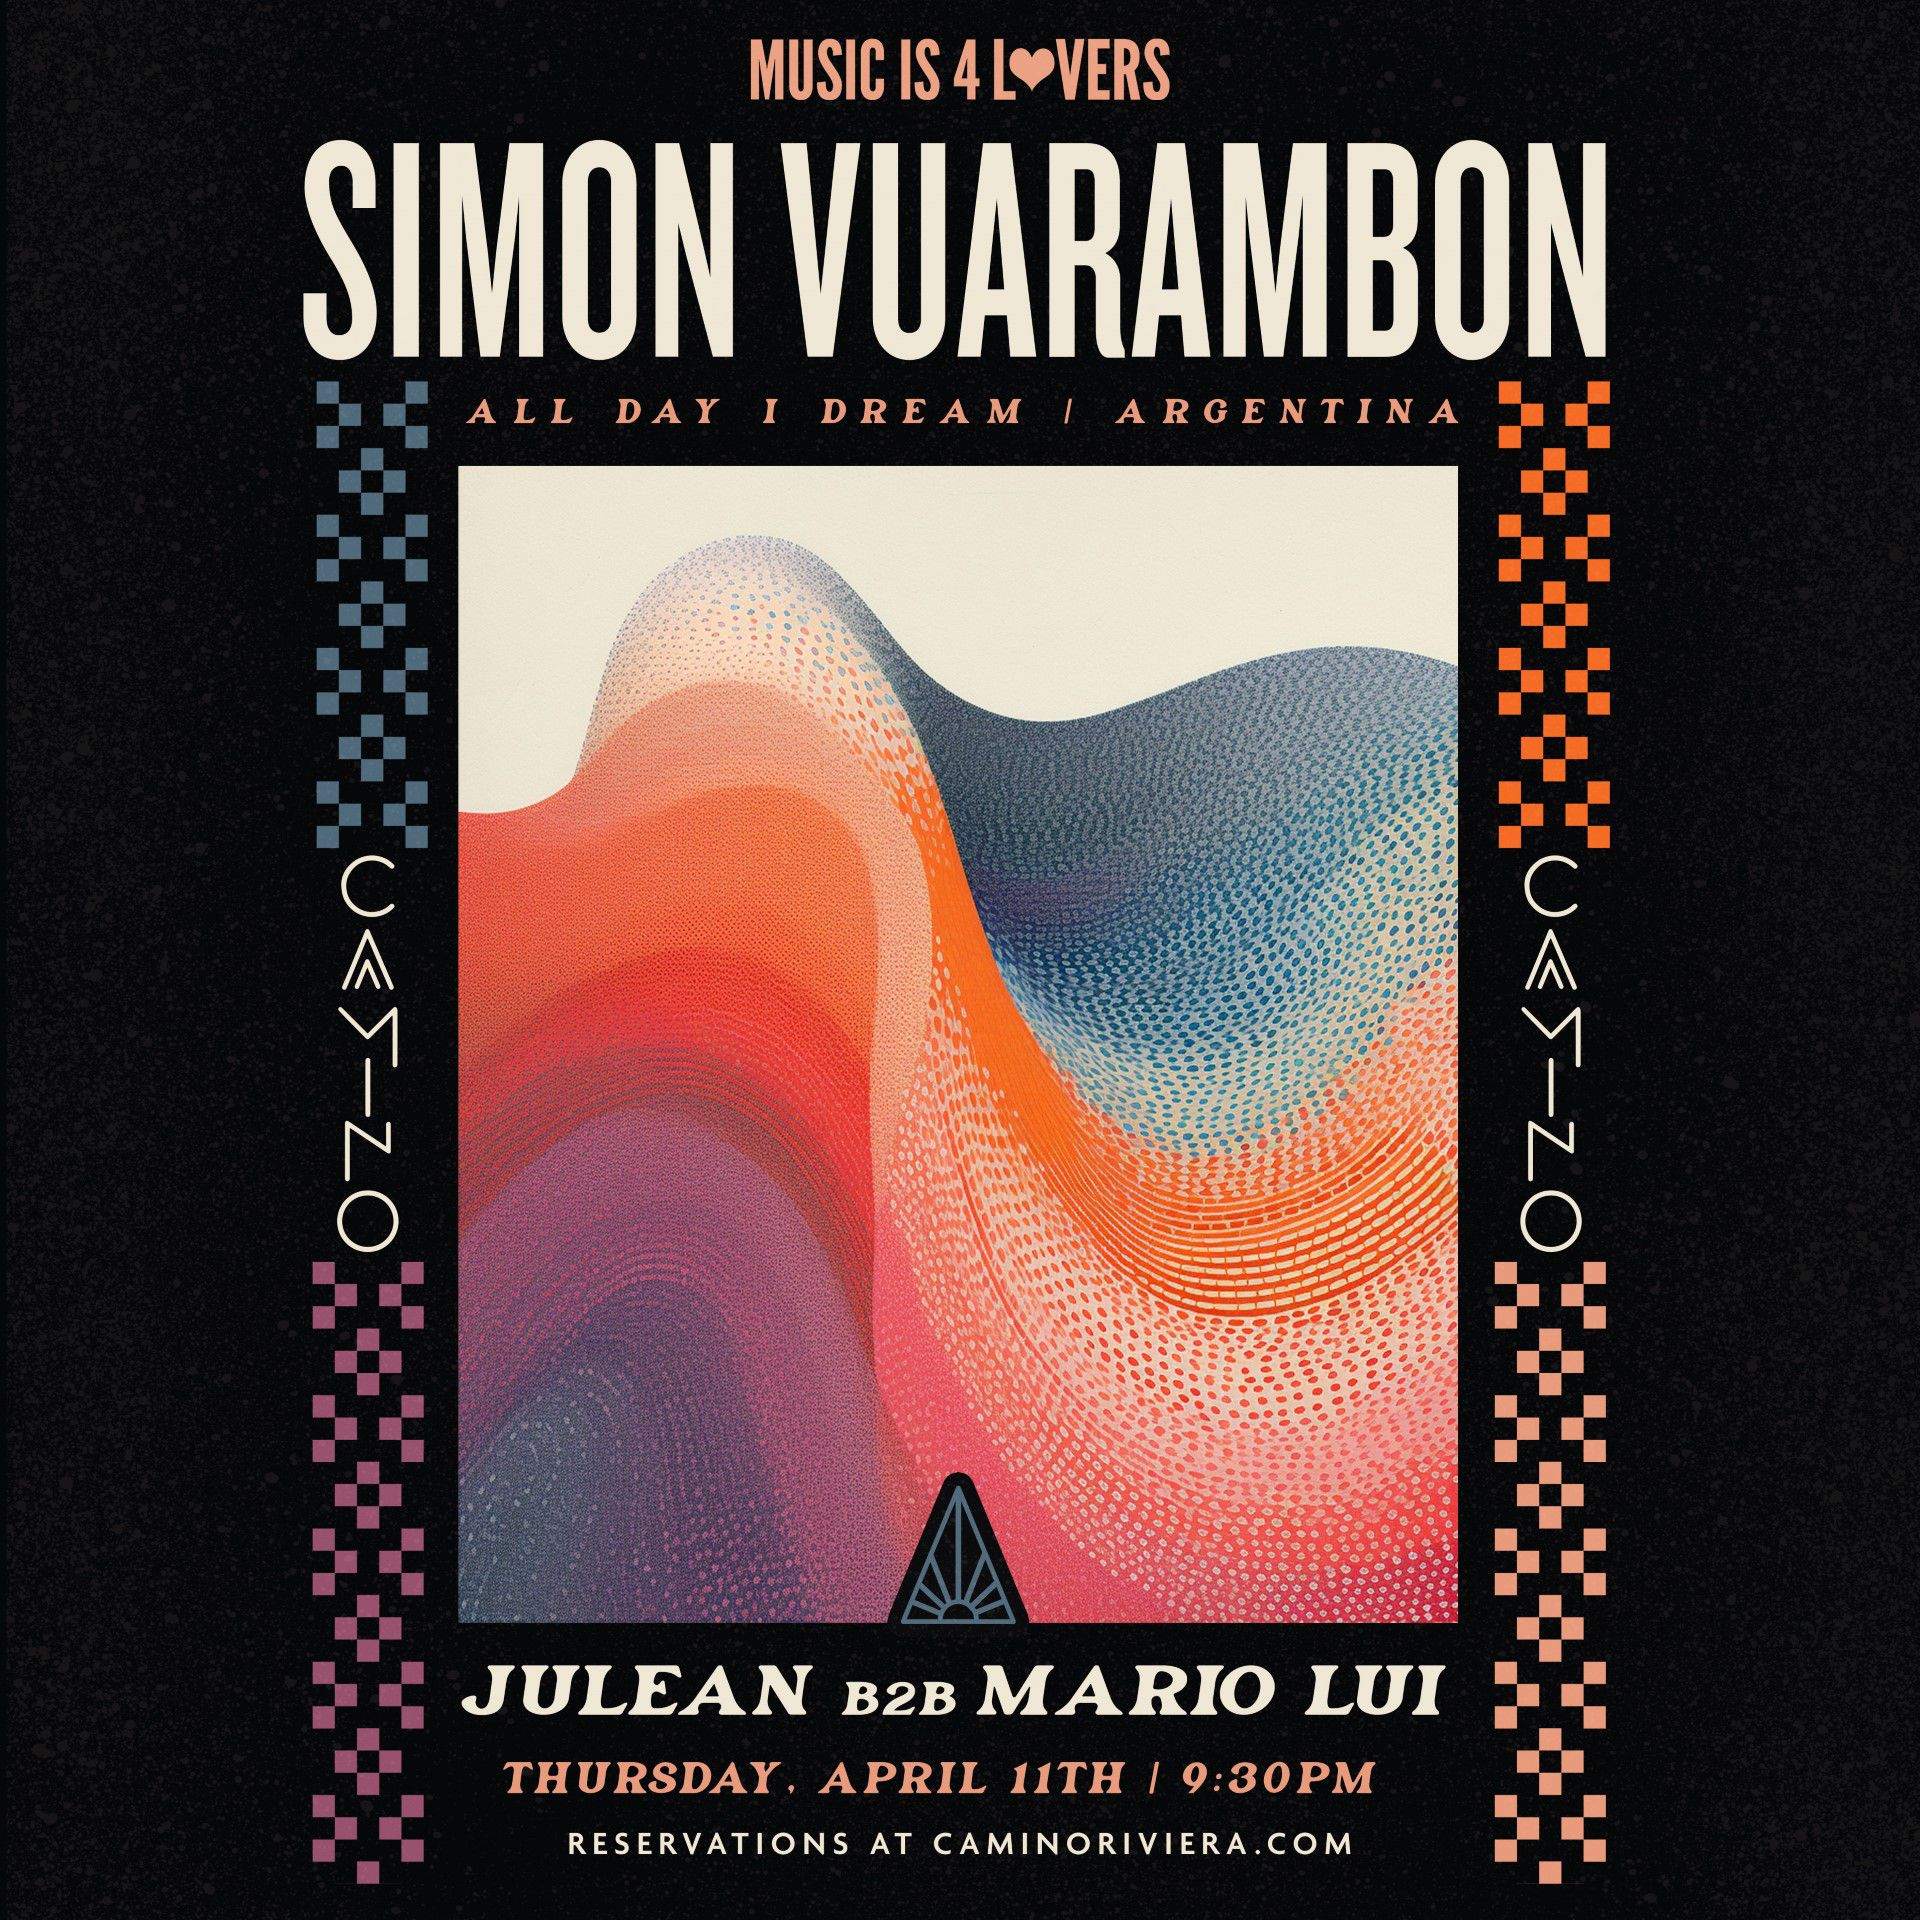 Simon Vuarambon [ALL DAY I DREAM - ARGENTINA] at Camino Riviera - NO COVER - フライヤー表